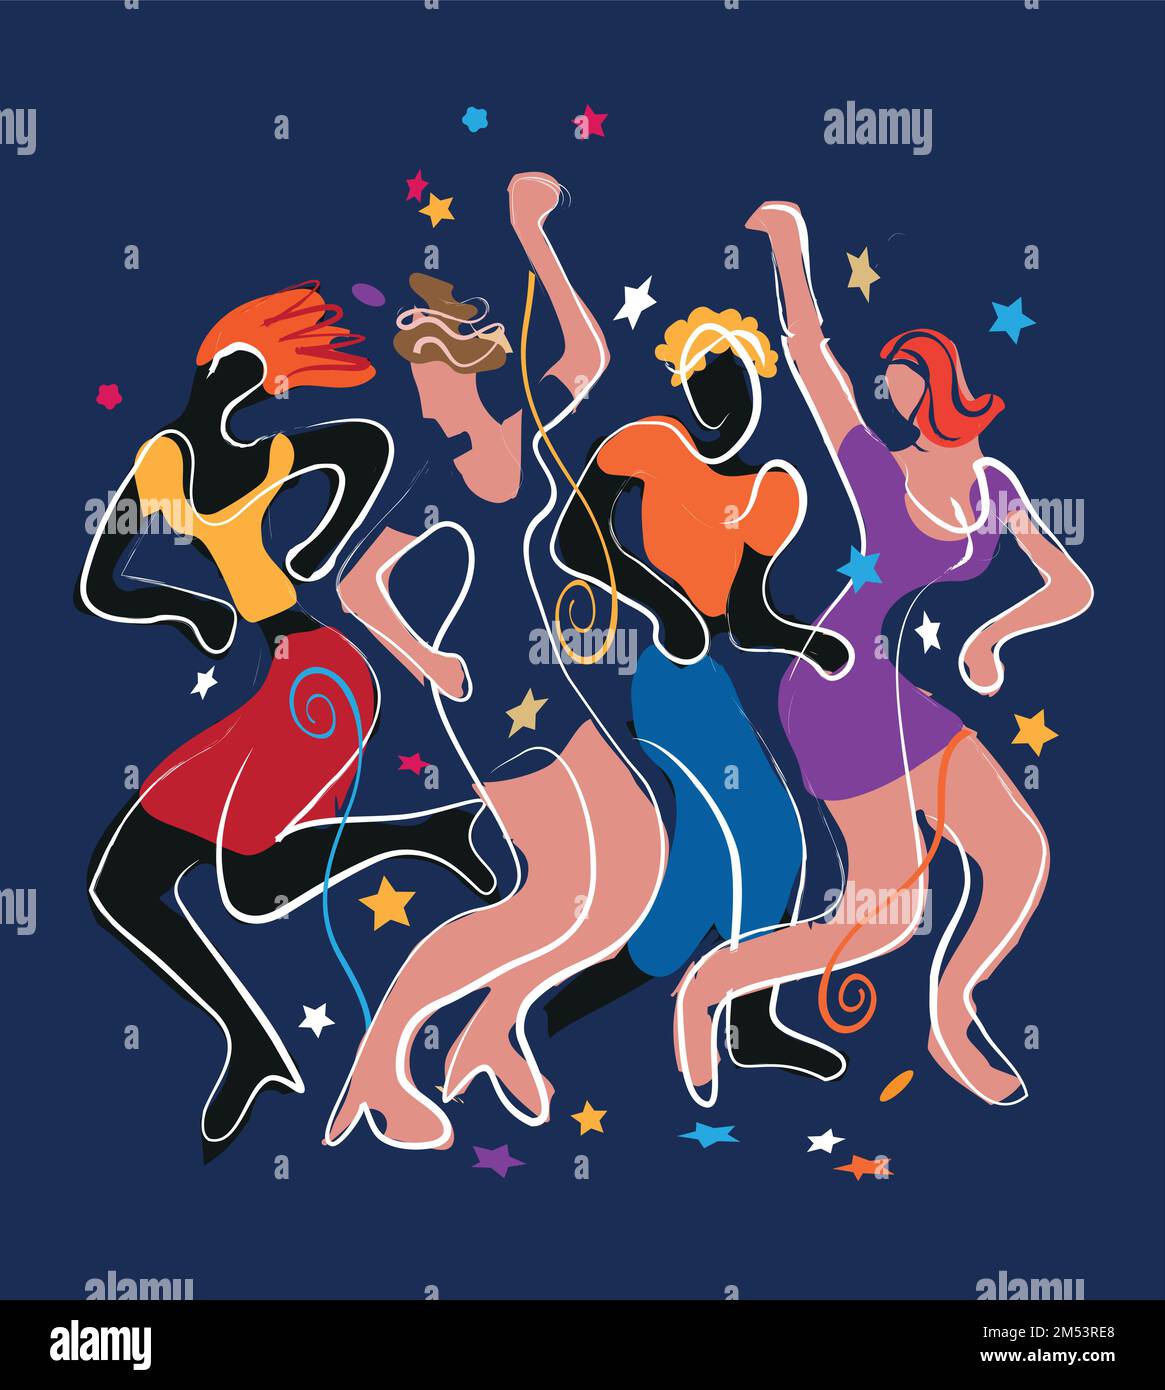 Junge Partyleute, die im Disco-Club tanzen, Silvesterfeier. Ausdrucksstarke, farbenfrohe Illustration lebendiger Tänzer auf blauem Hintergrund. Stock Vektor